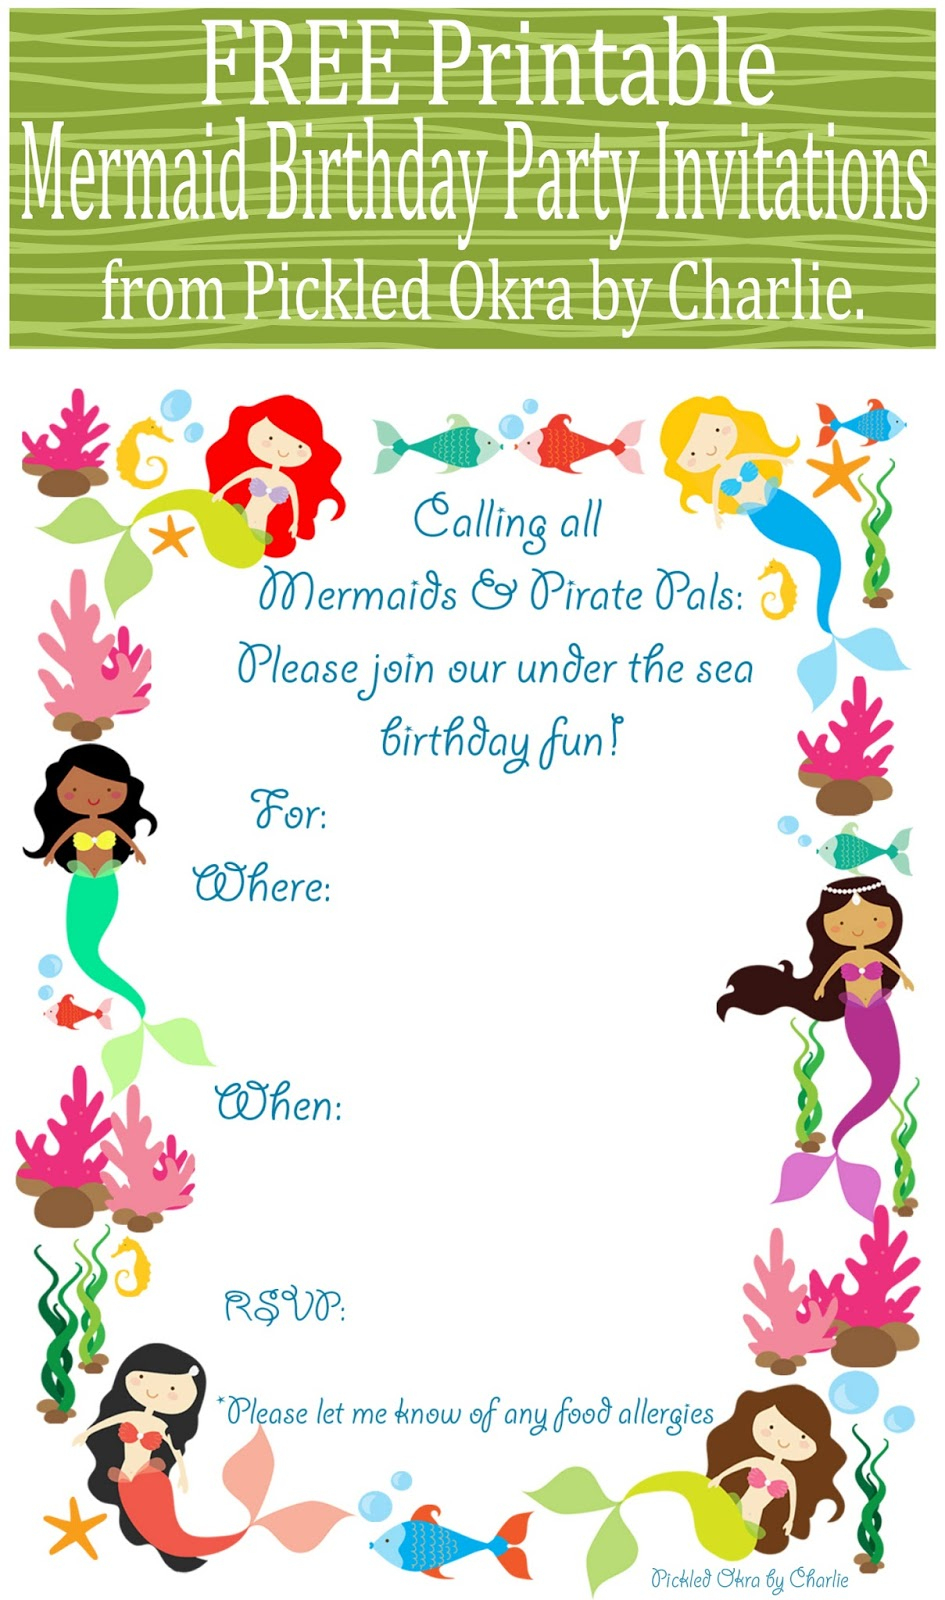 Mermaid Bithday Party Invitations, Free Printable - Free Printable Water Park Birthday Invitations